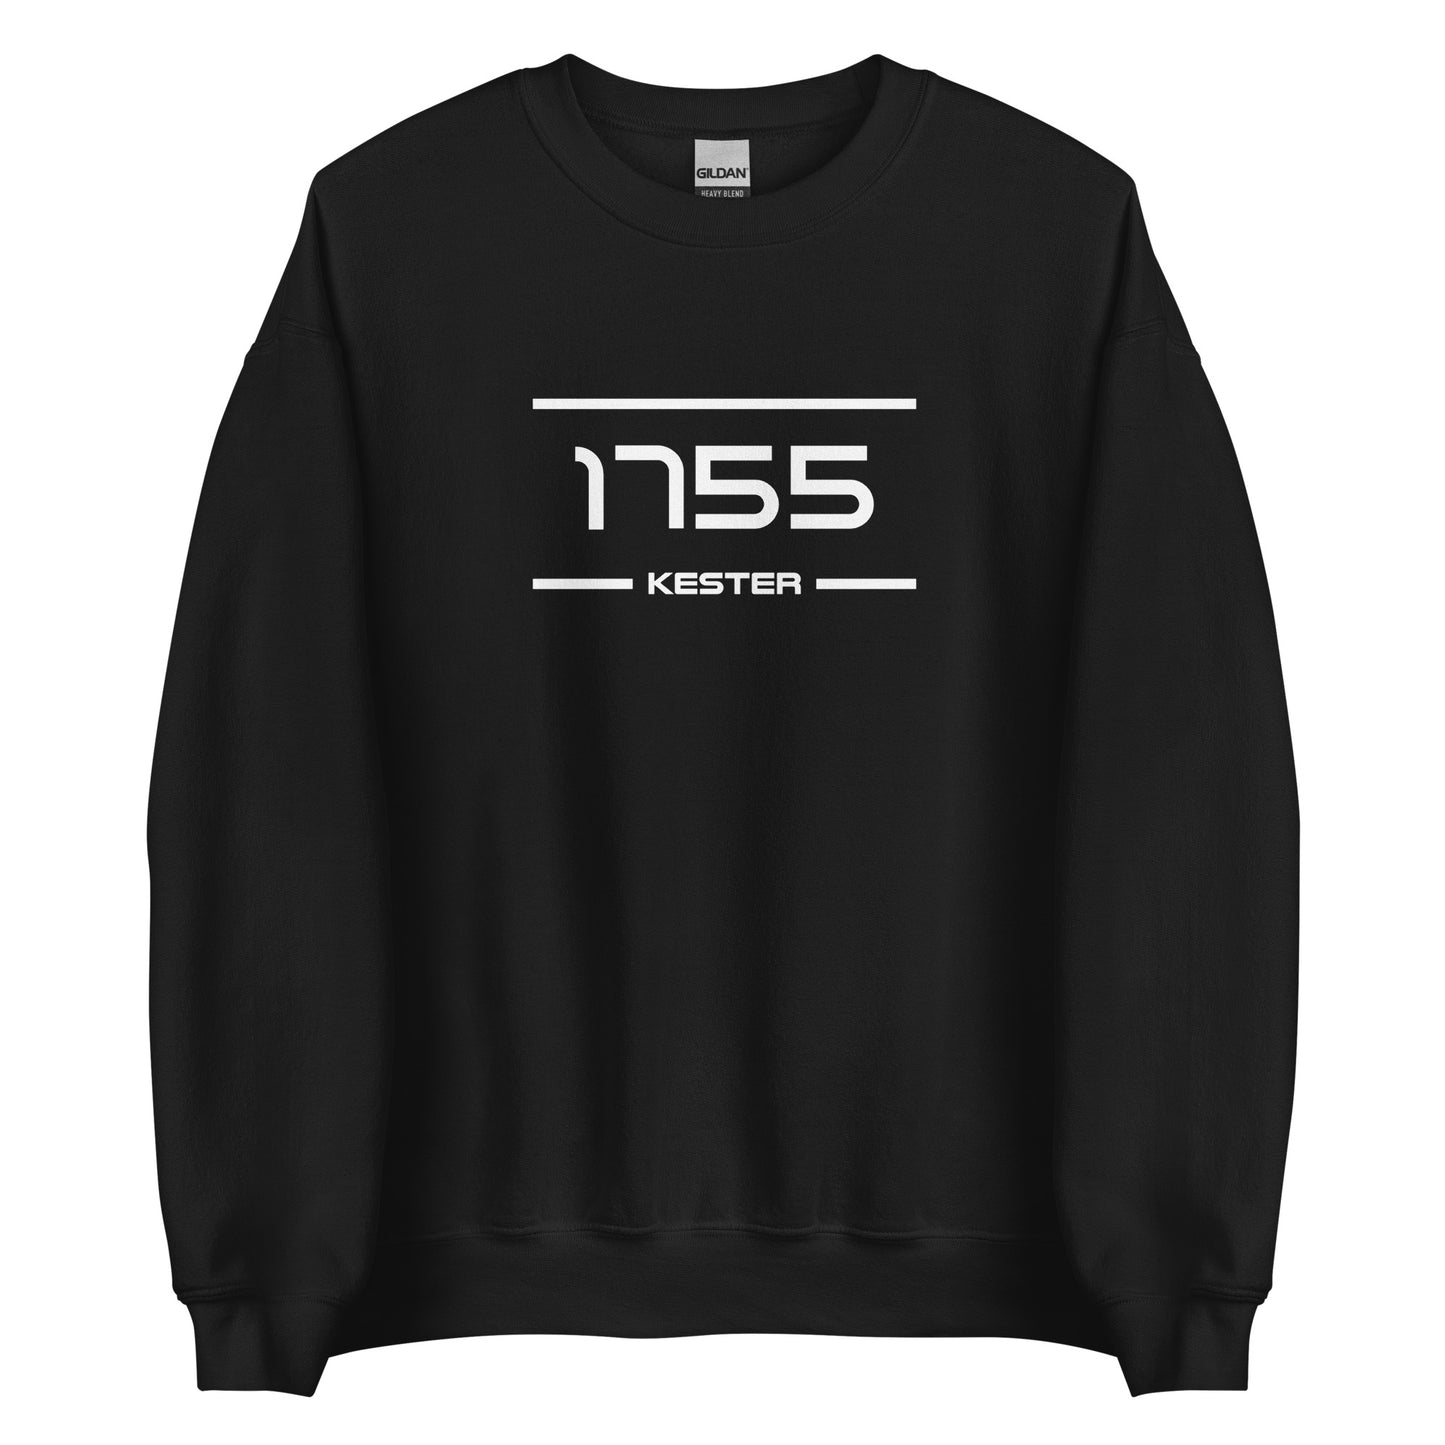 Sweater - 1755 - Kester (M/V)